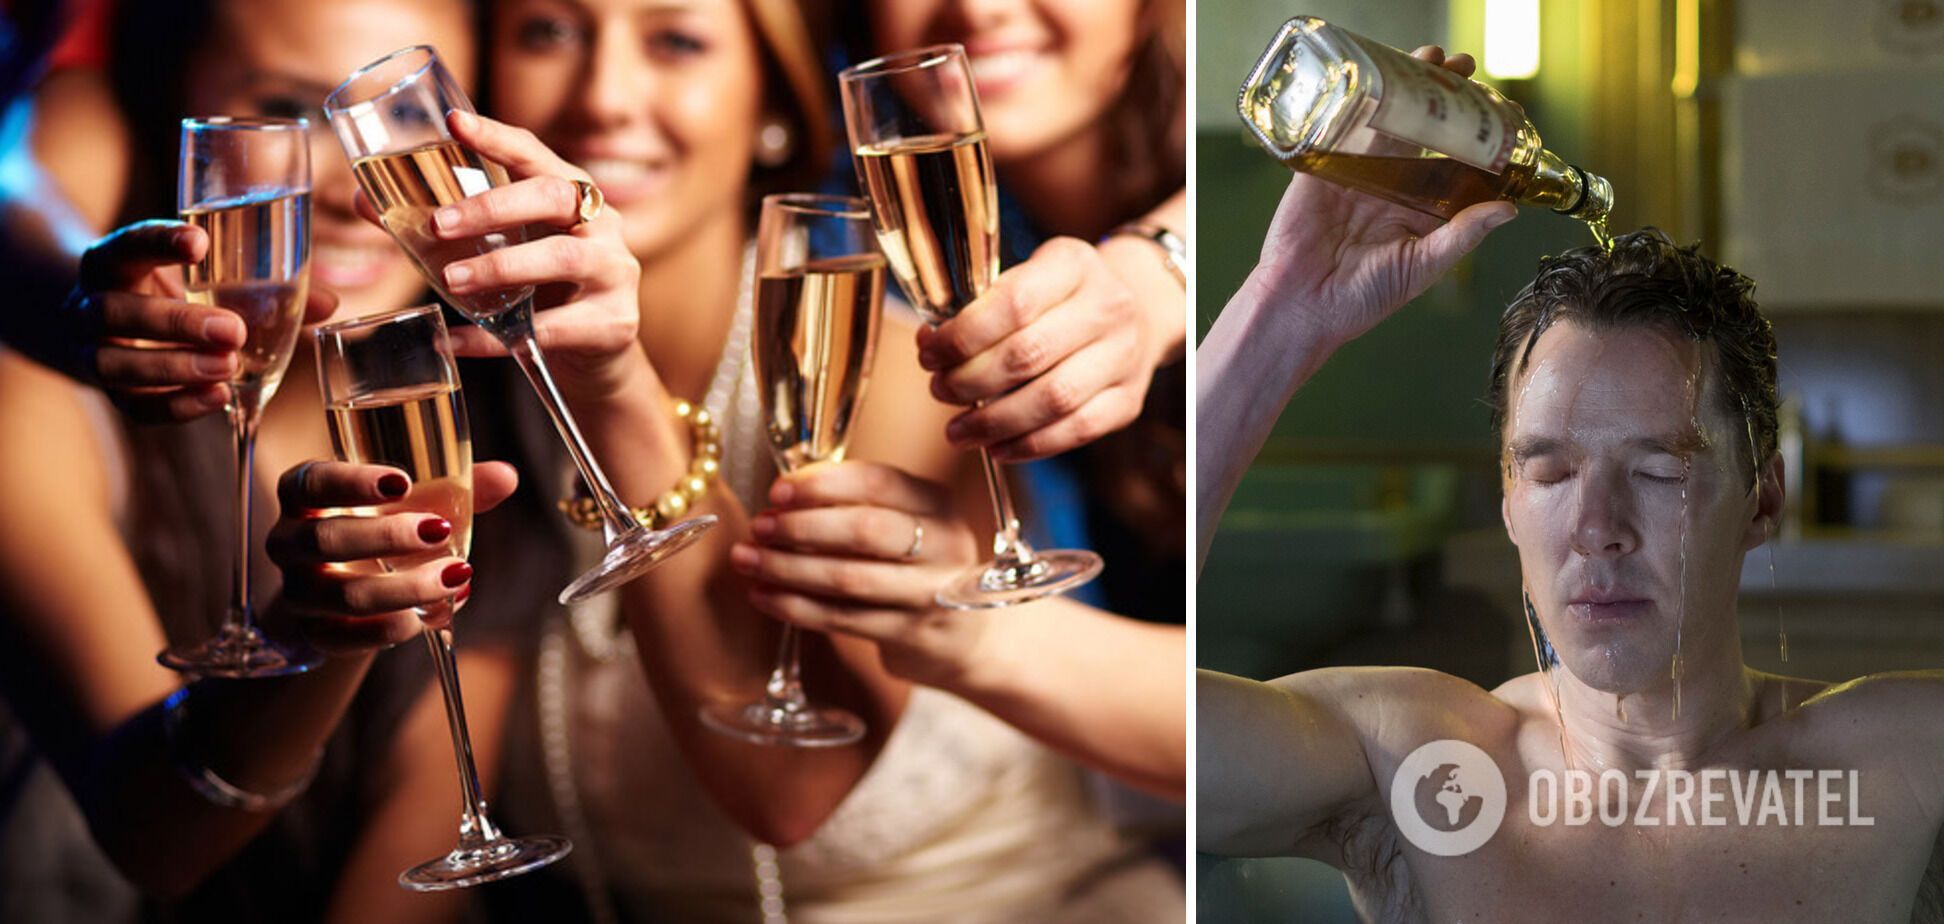 Споживання алкоголю шкодить здоров'ю.